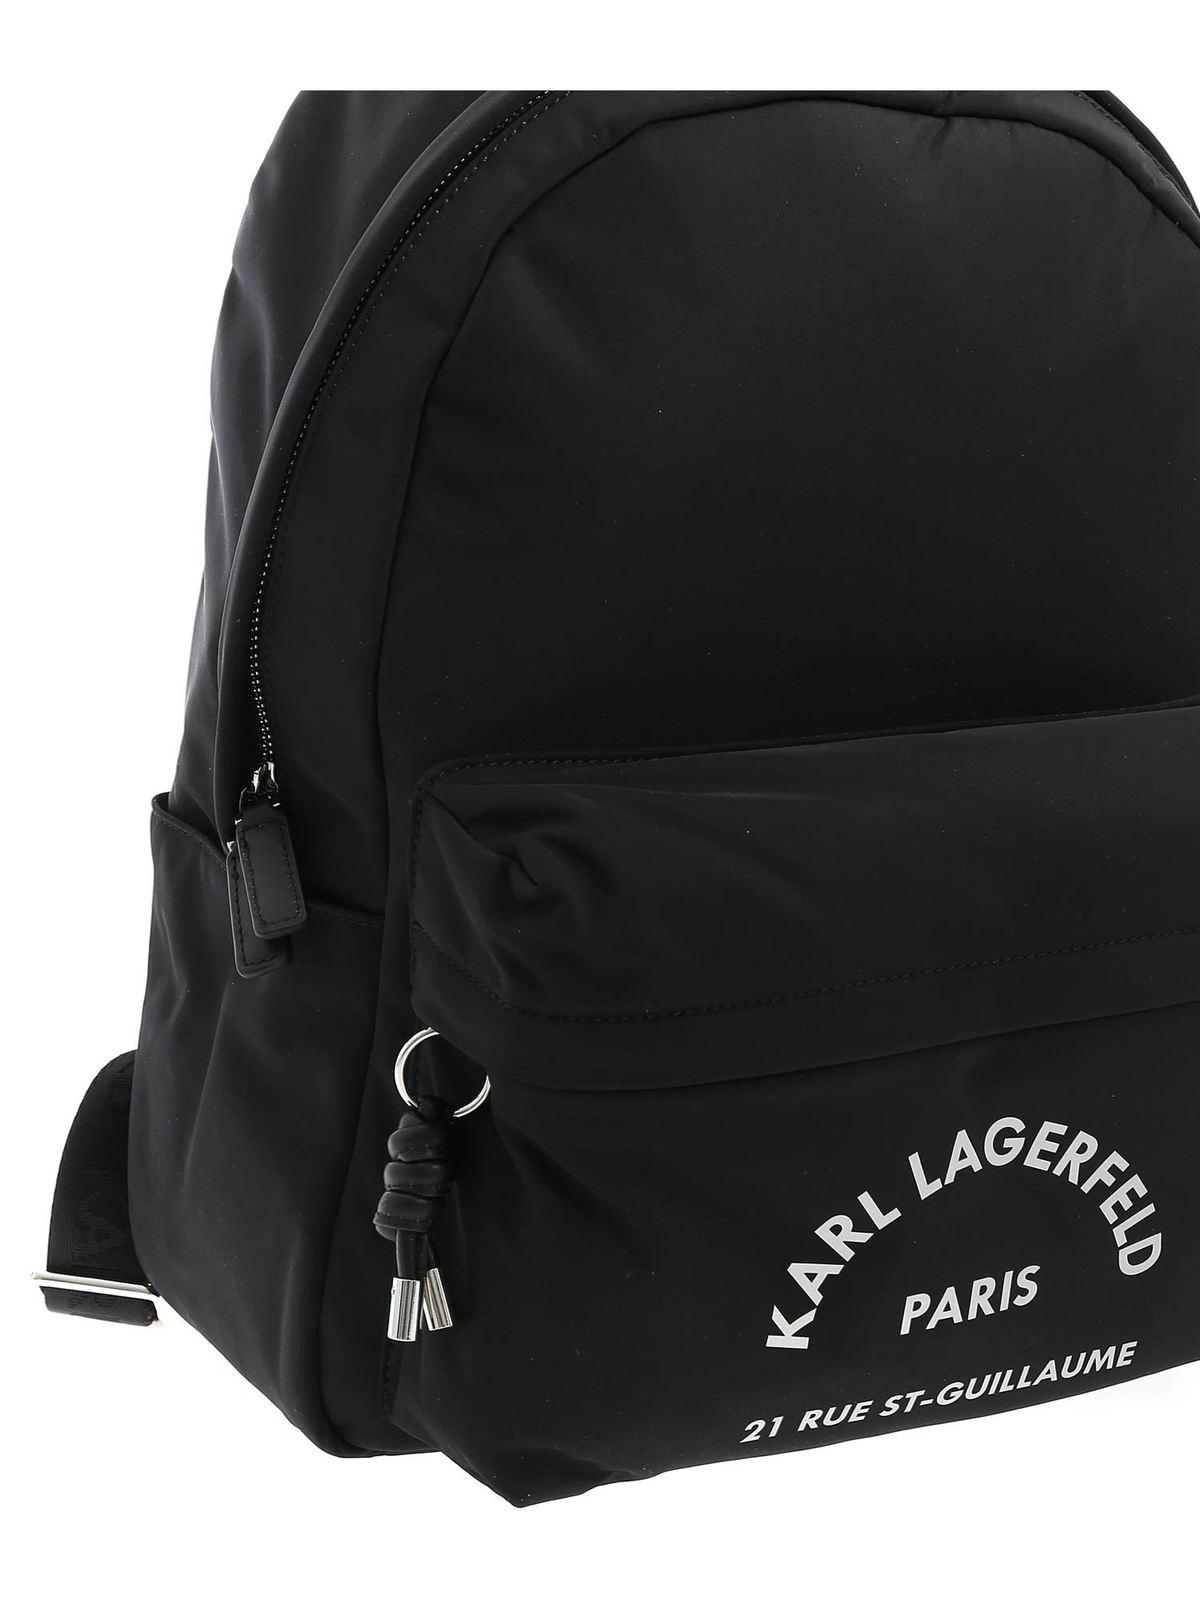 Karl Lagerfeld Rue St-Guillaume Laptop Sleeve Black